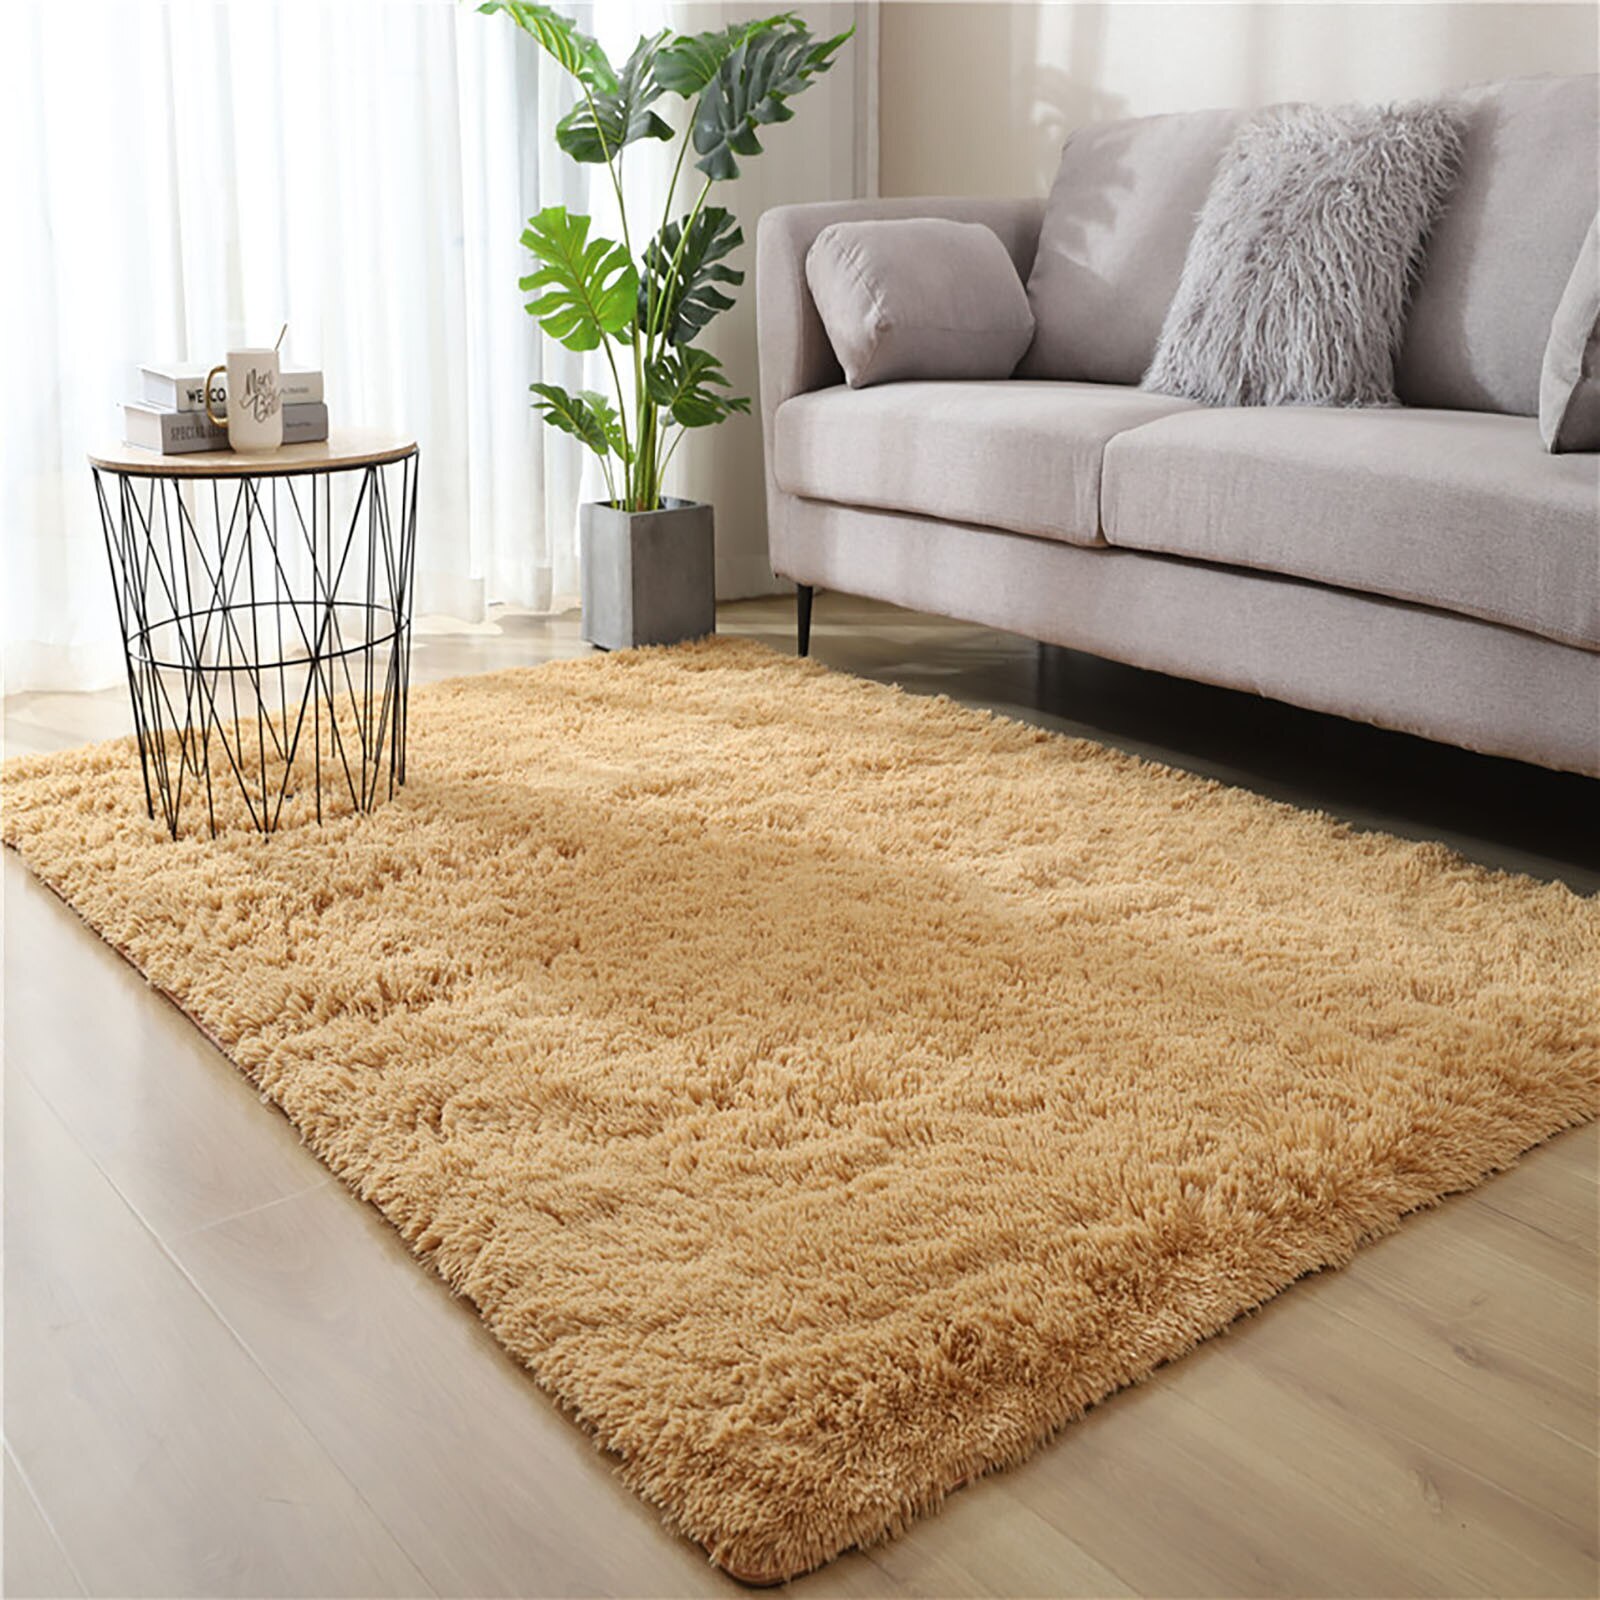 Soft Shag Rug Carpet Mat (Caramel, 160 x 120)